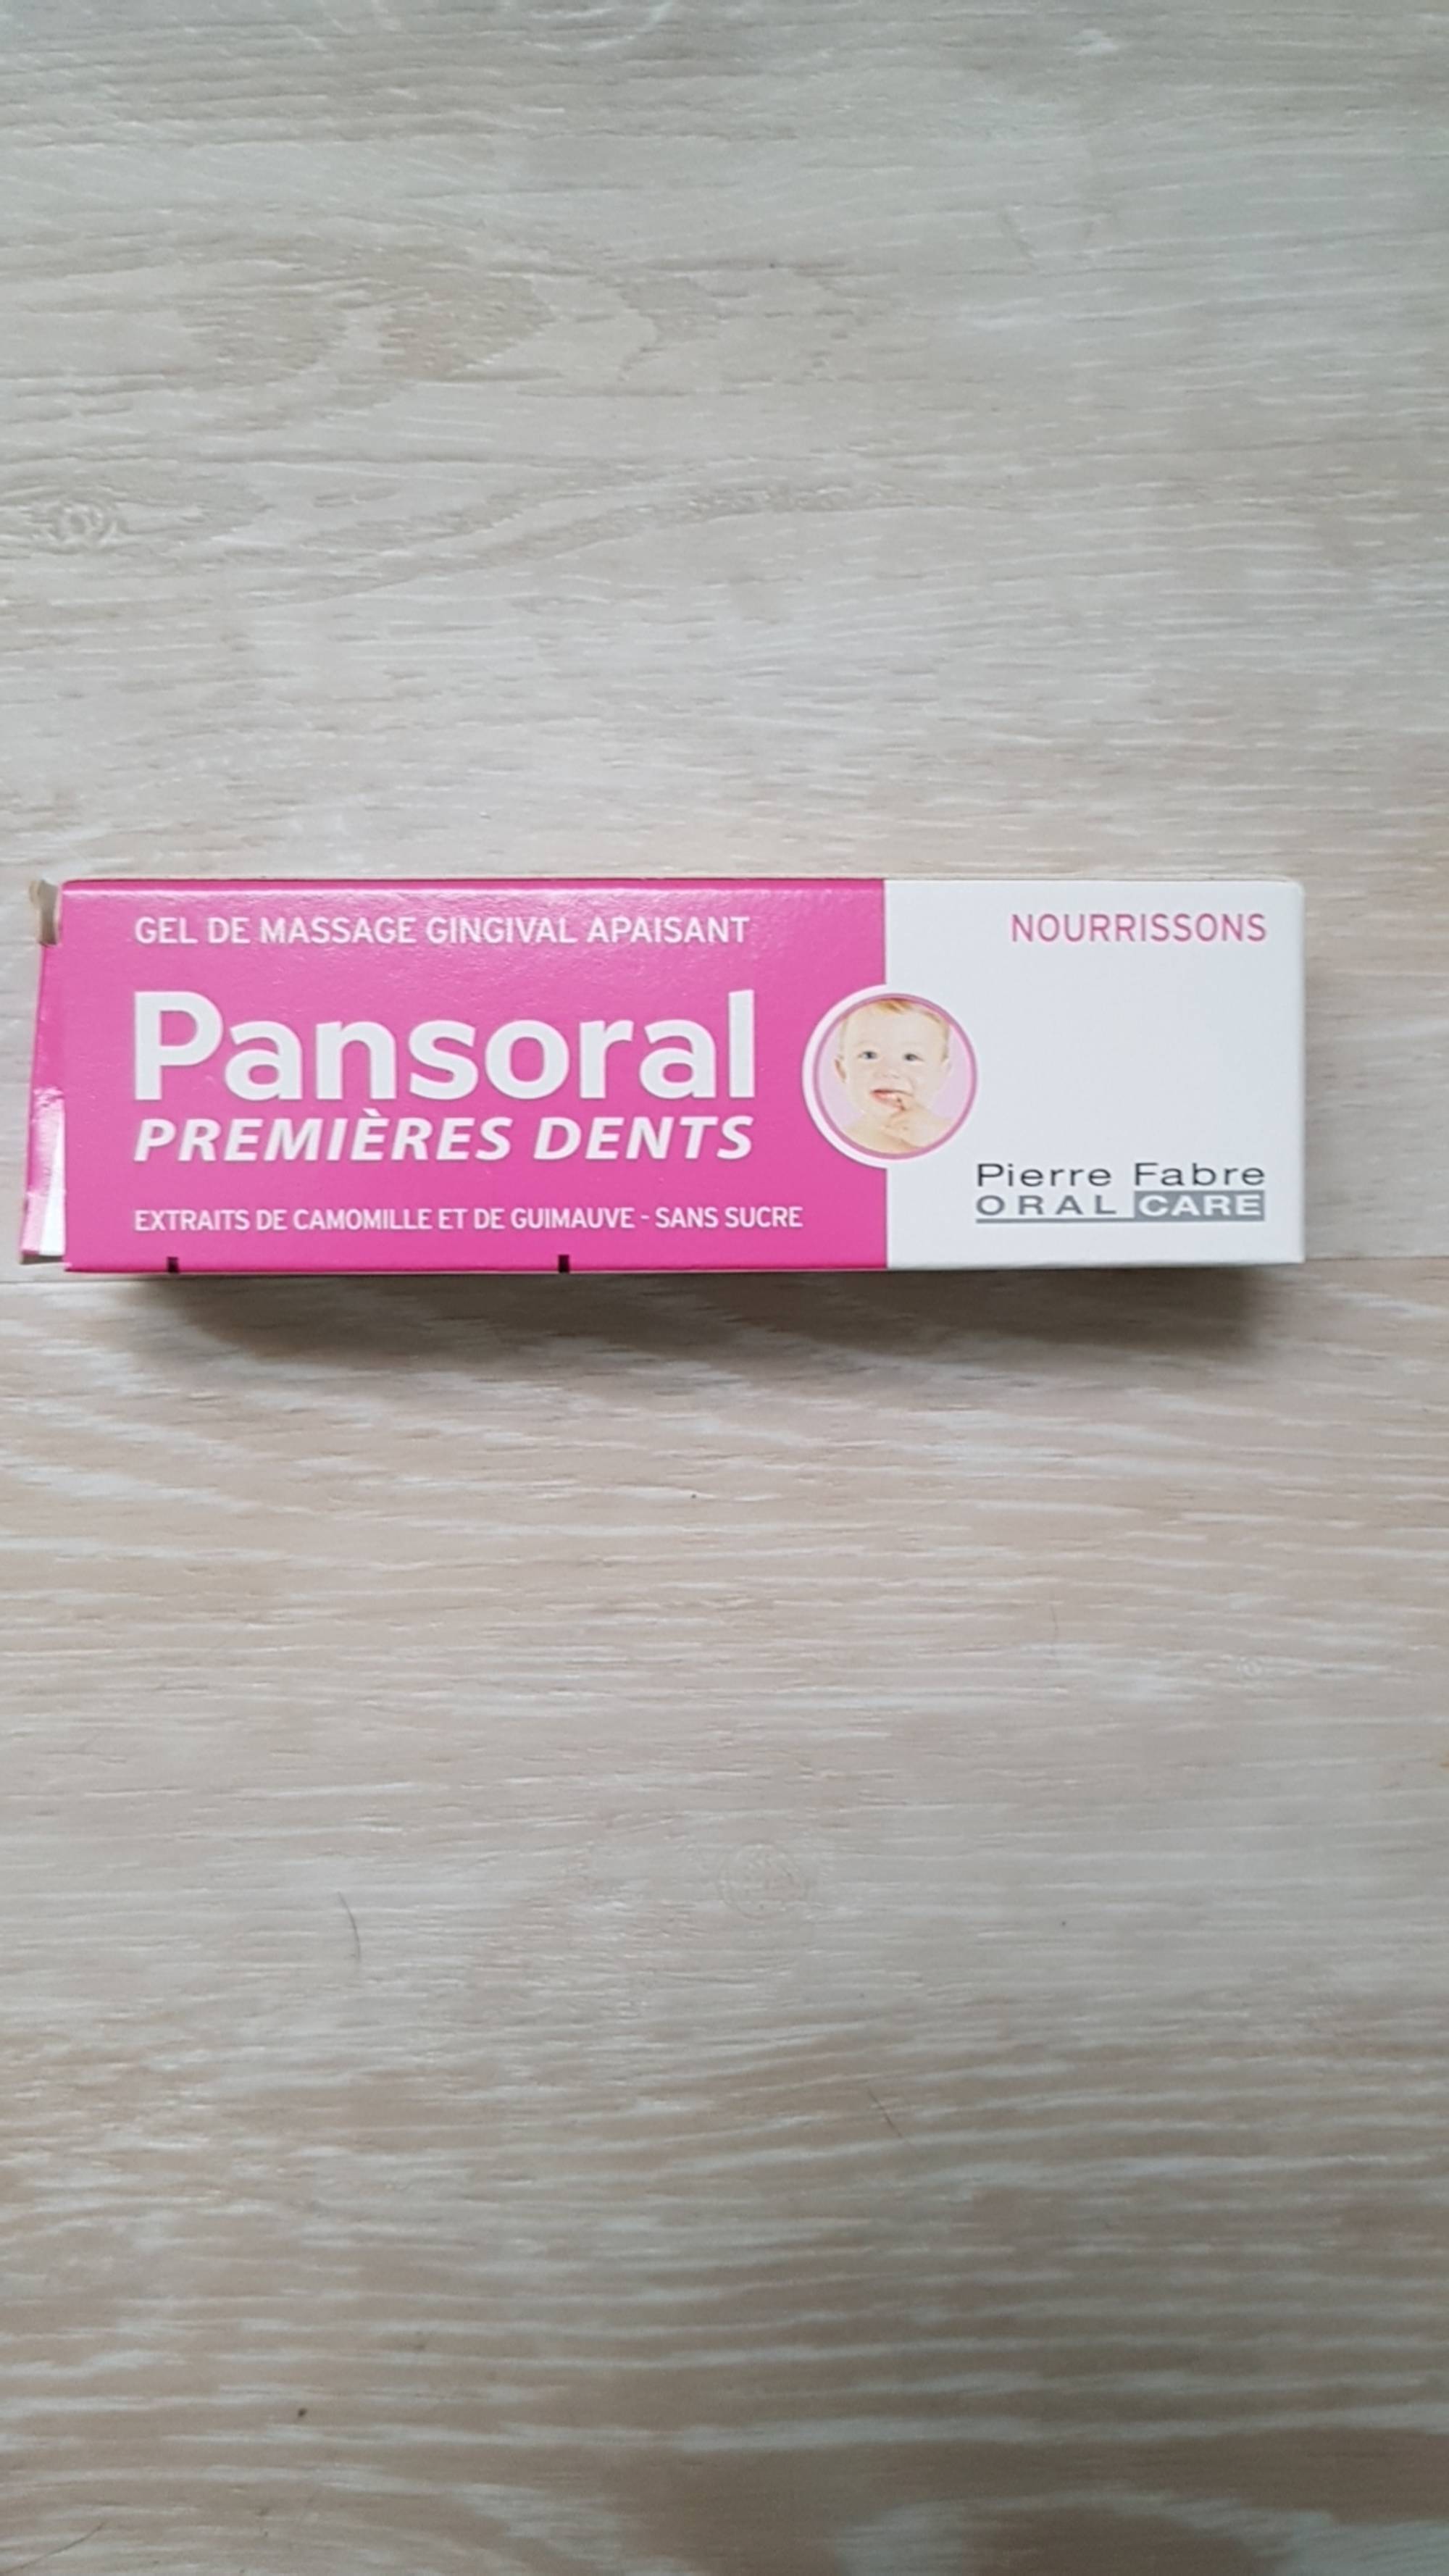 PIERRE FABRE - Pansoral premières dents - Gel de massage gingival nourrissons